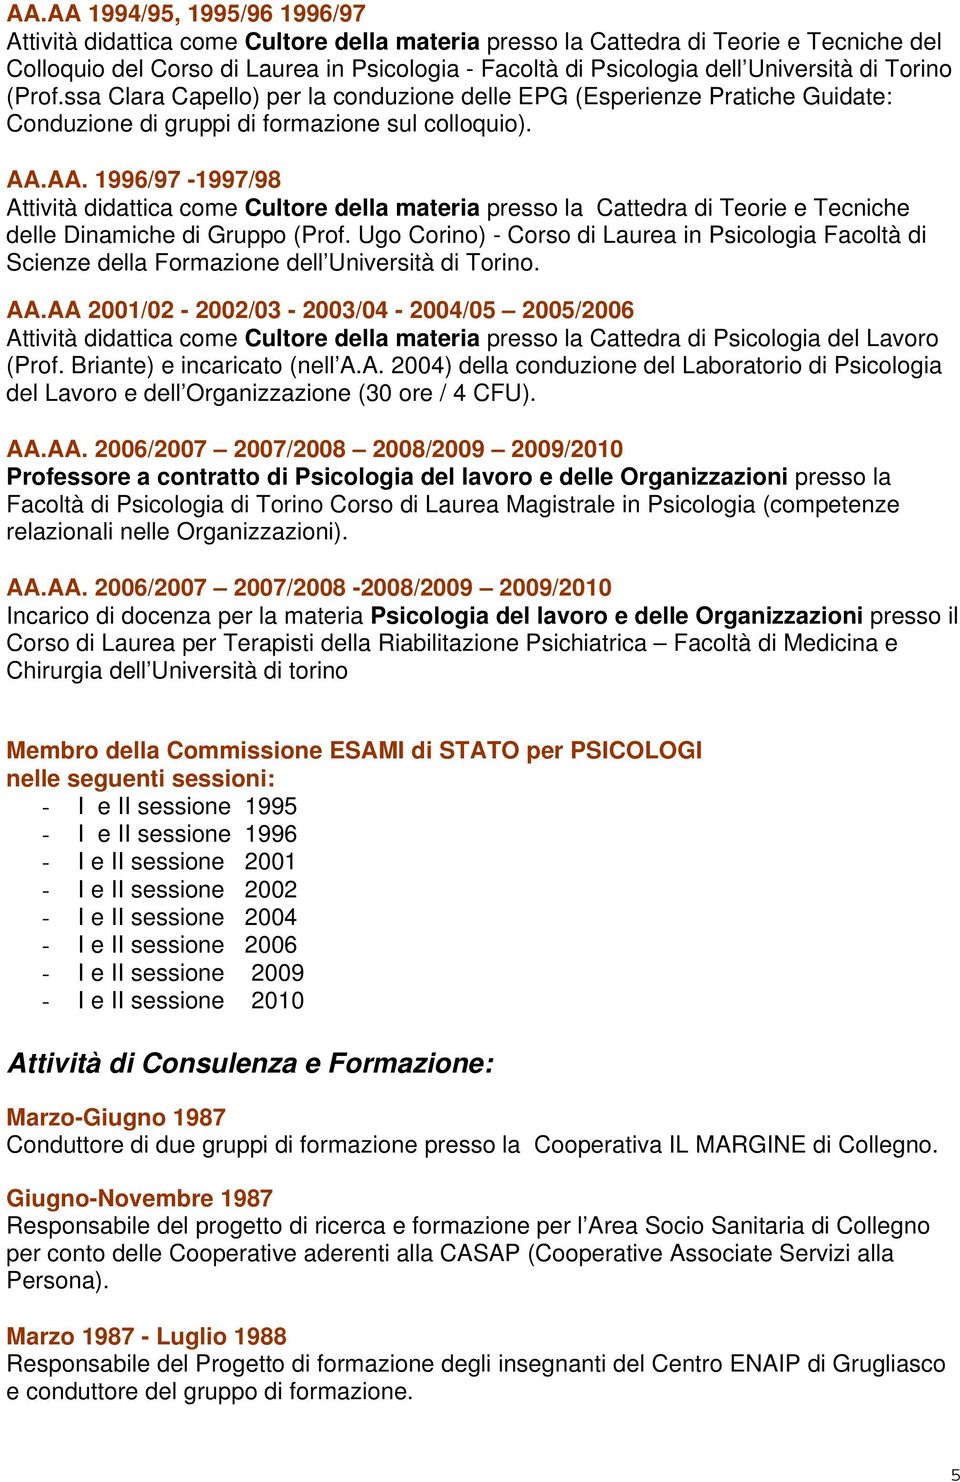 AA. 1996/97-1997/98 Attività didattica come Cultore della materia presso la Cattedra di Teorie e Tecniche delle Dinamiche di Gruppo (Prof.